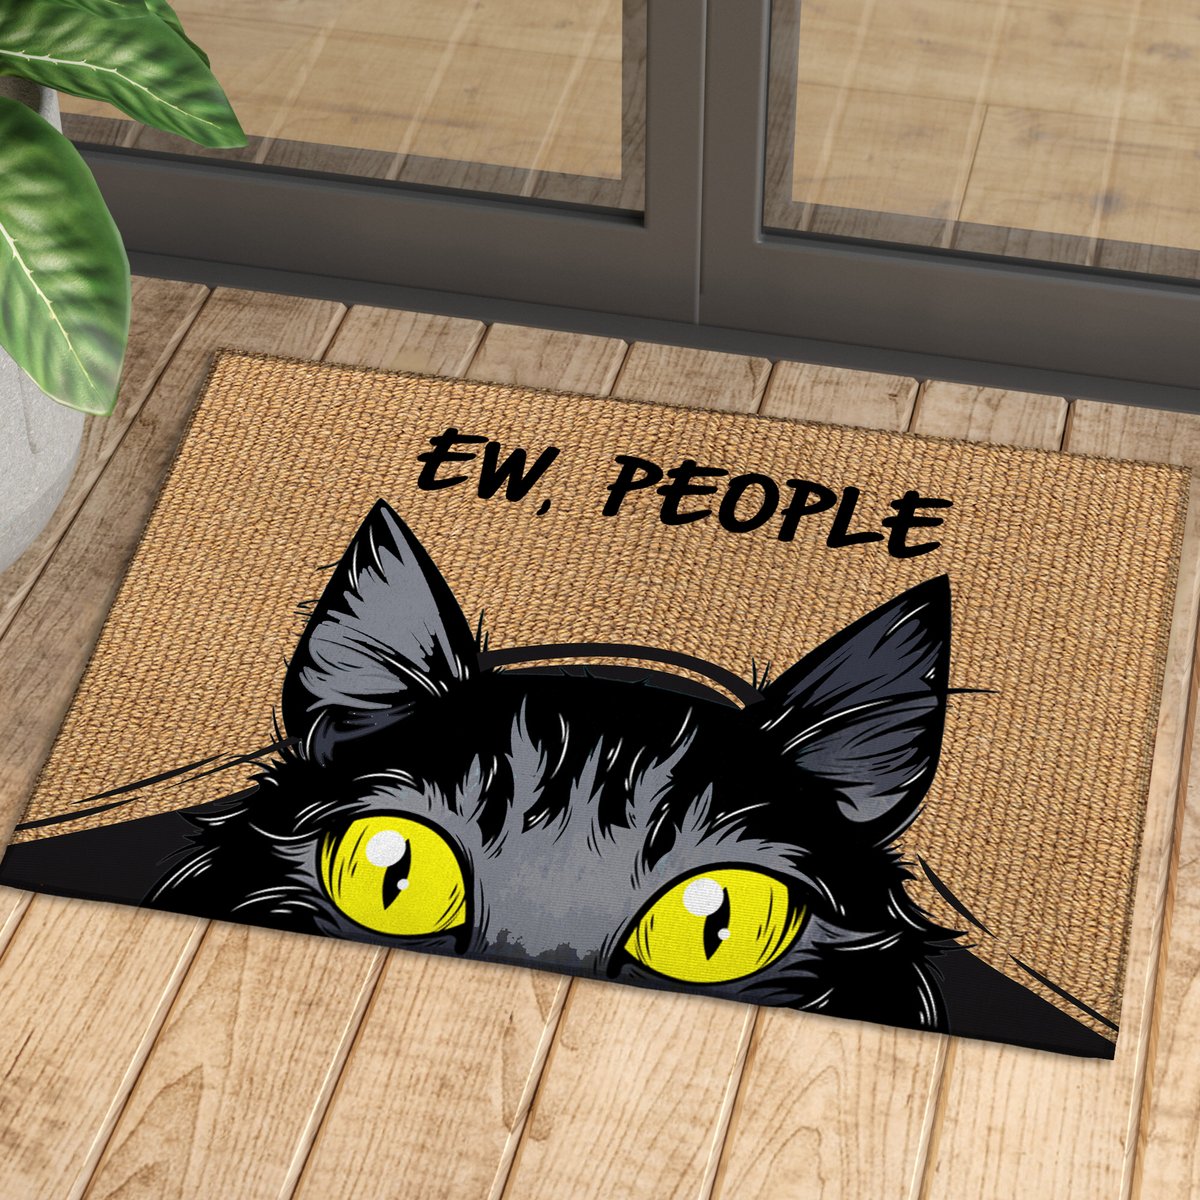 Black cat ew people doormat 4